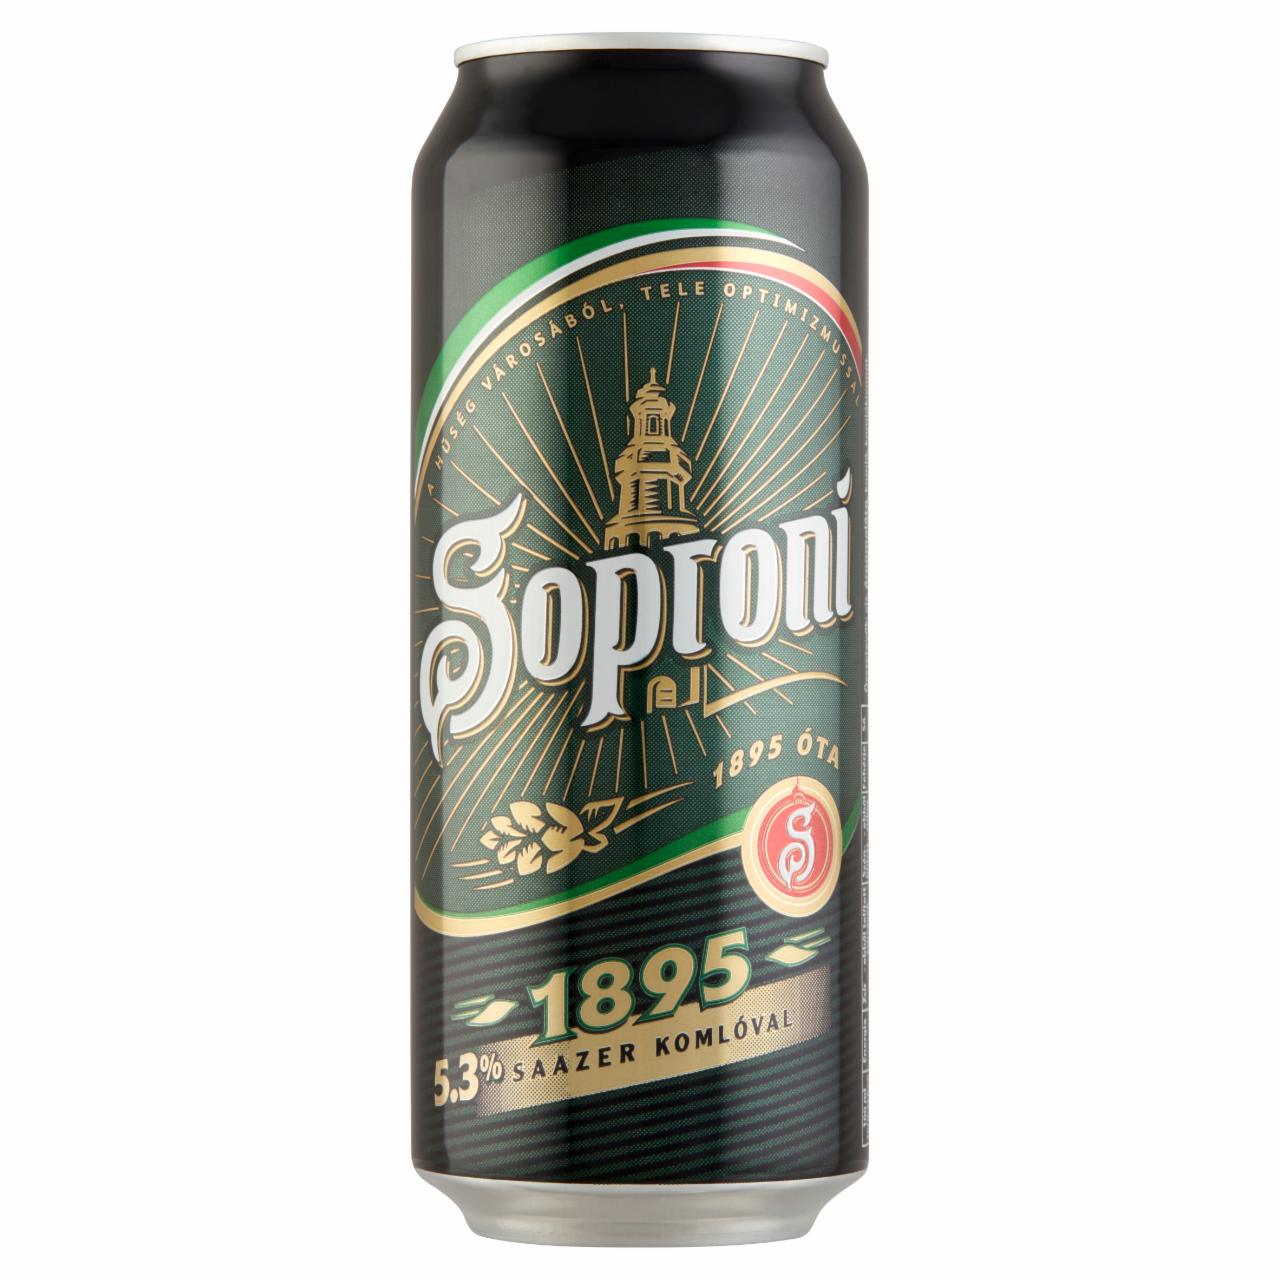 Képek - Soproni 1895 minőségi világos sör 5,3% 0,5 l doboz